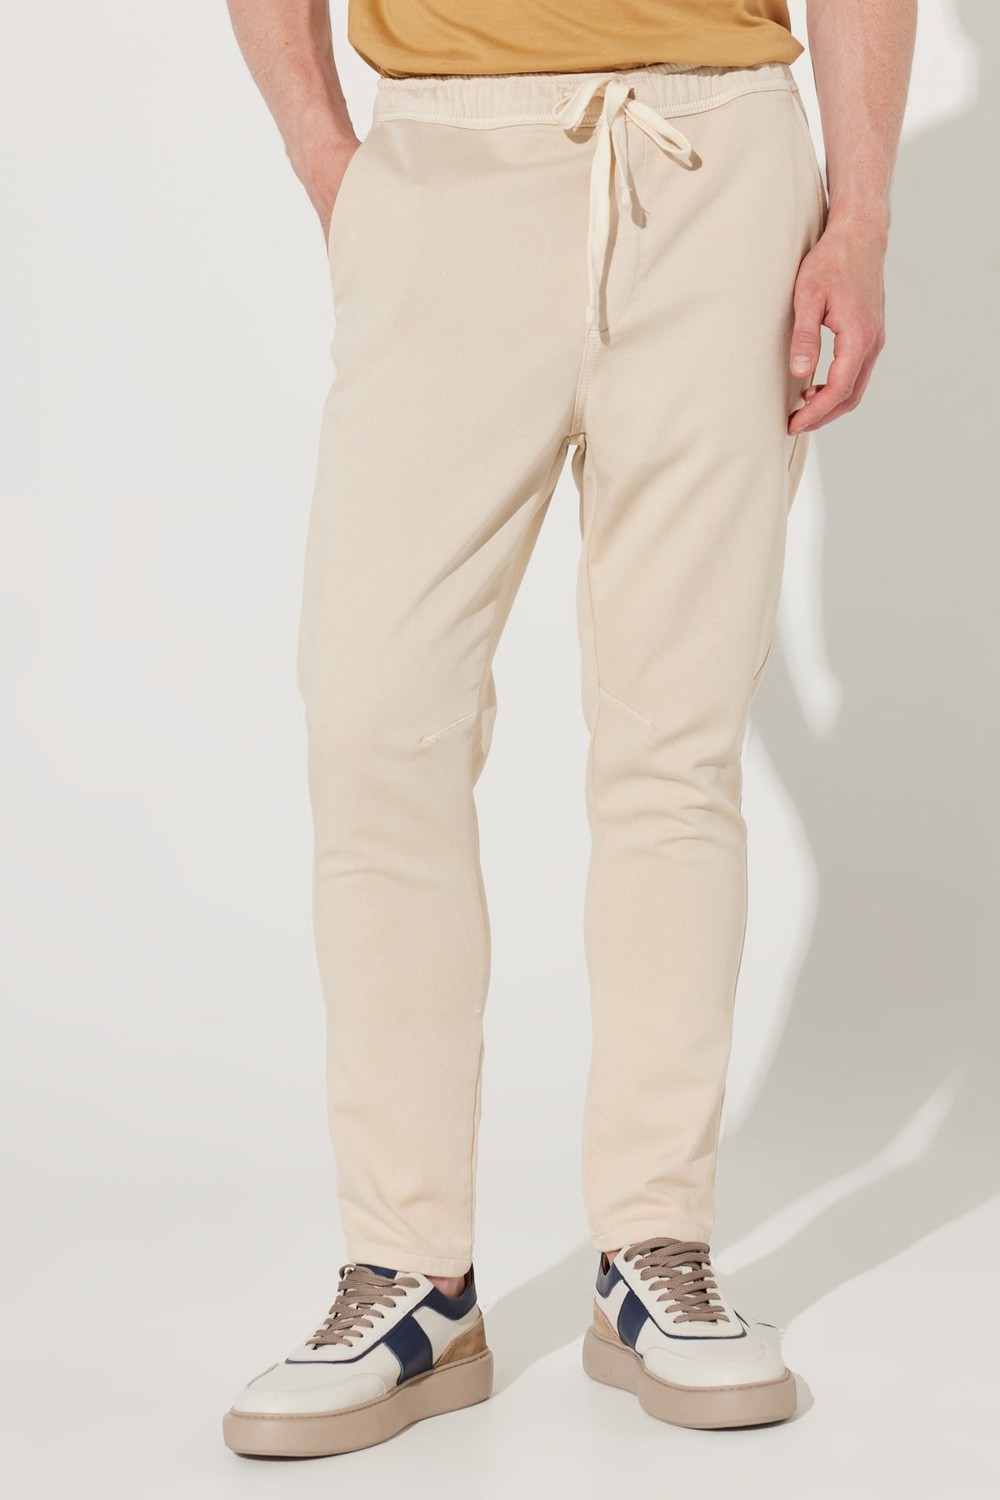 ALTINYILDIZ CLASSICS Men's Beige Slim Fit Slim Fit Cotton Trousers with Side Pockets.